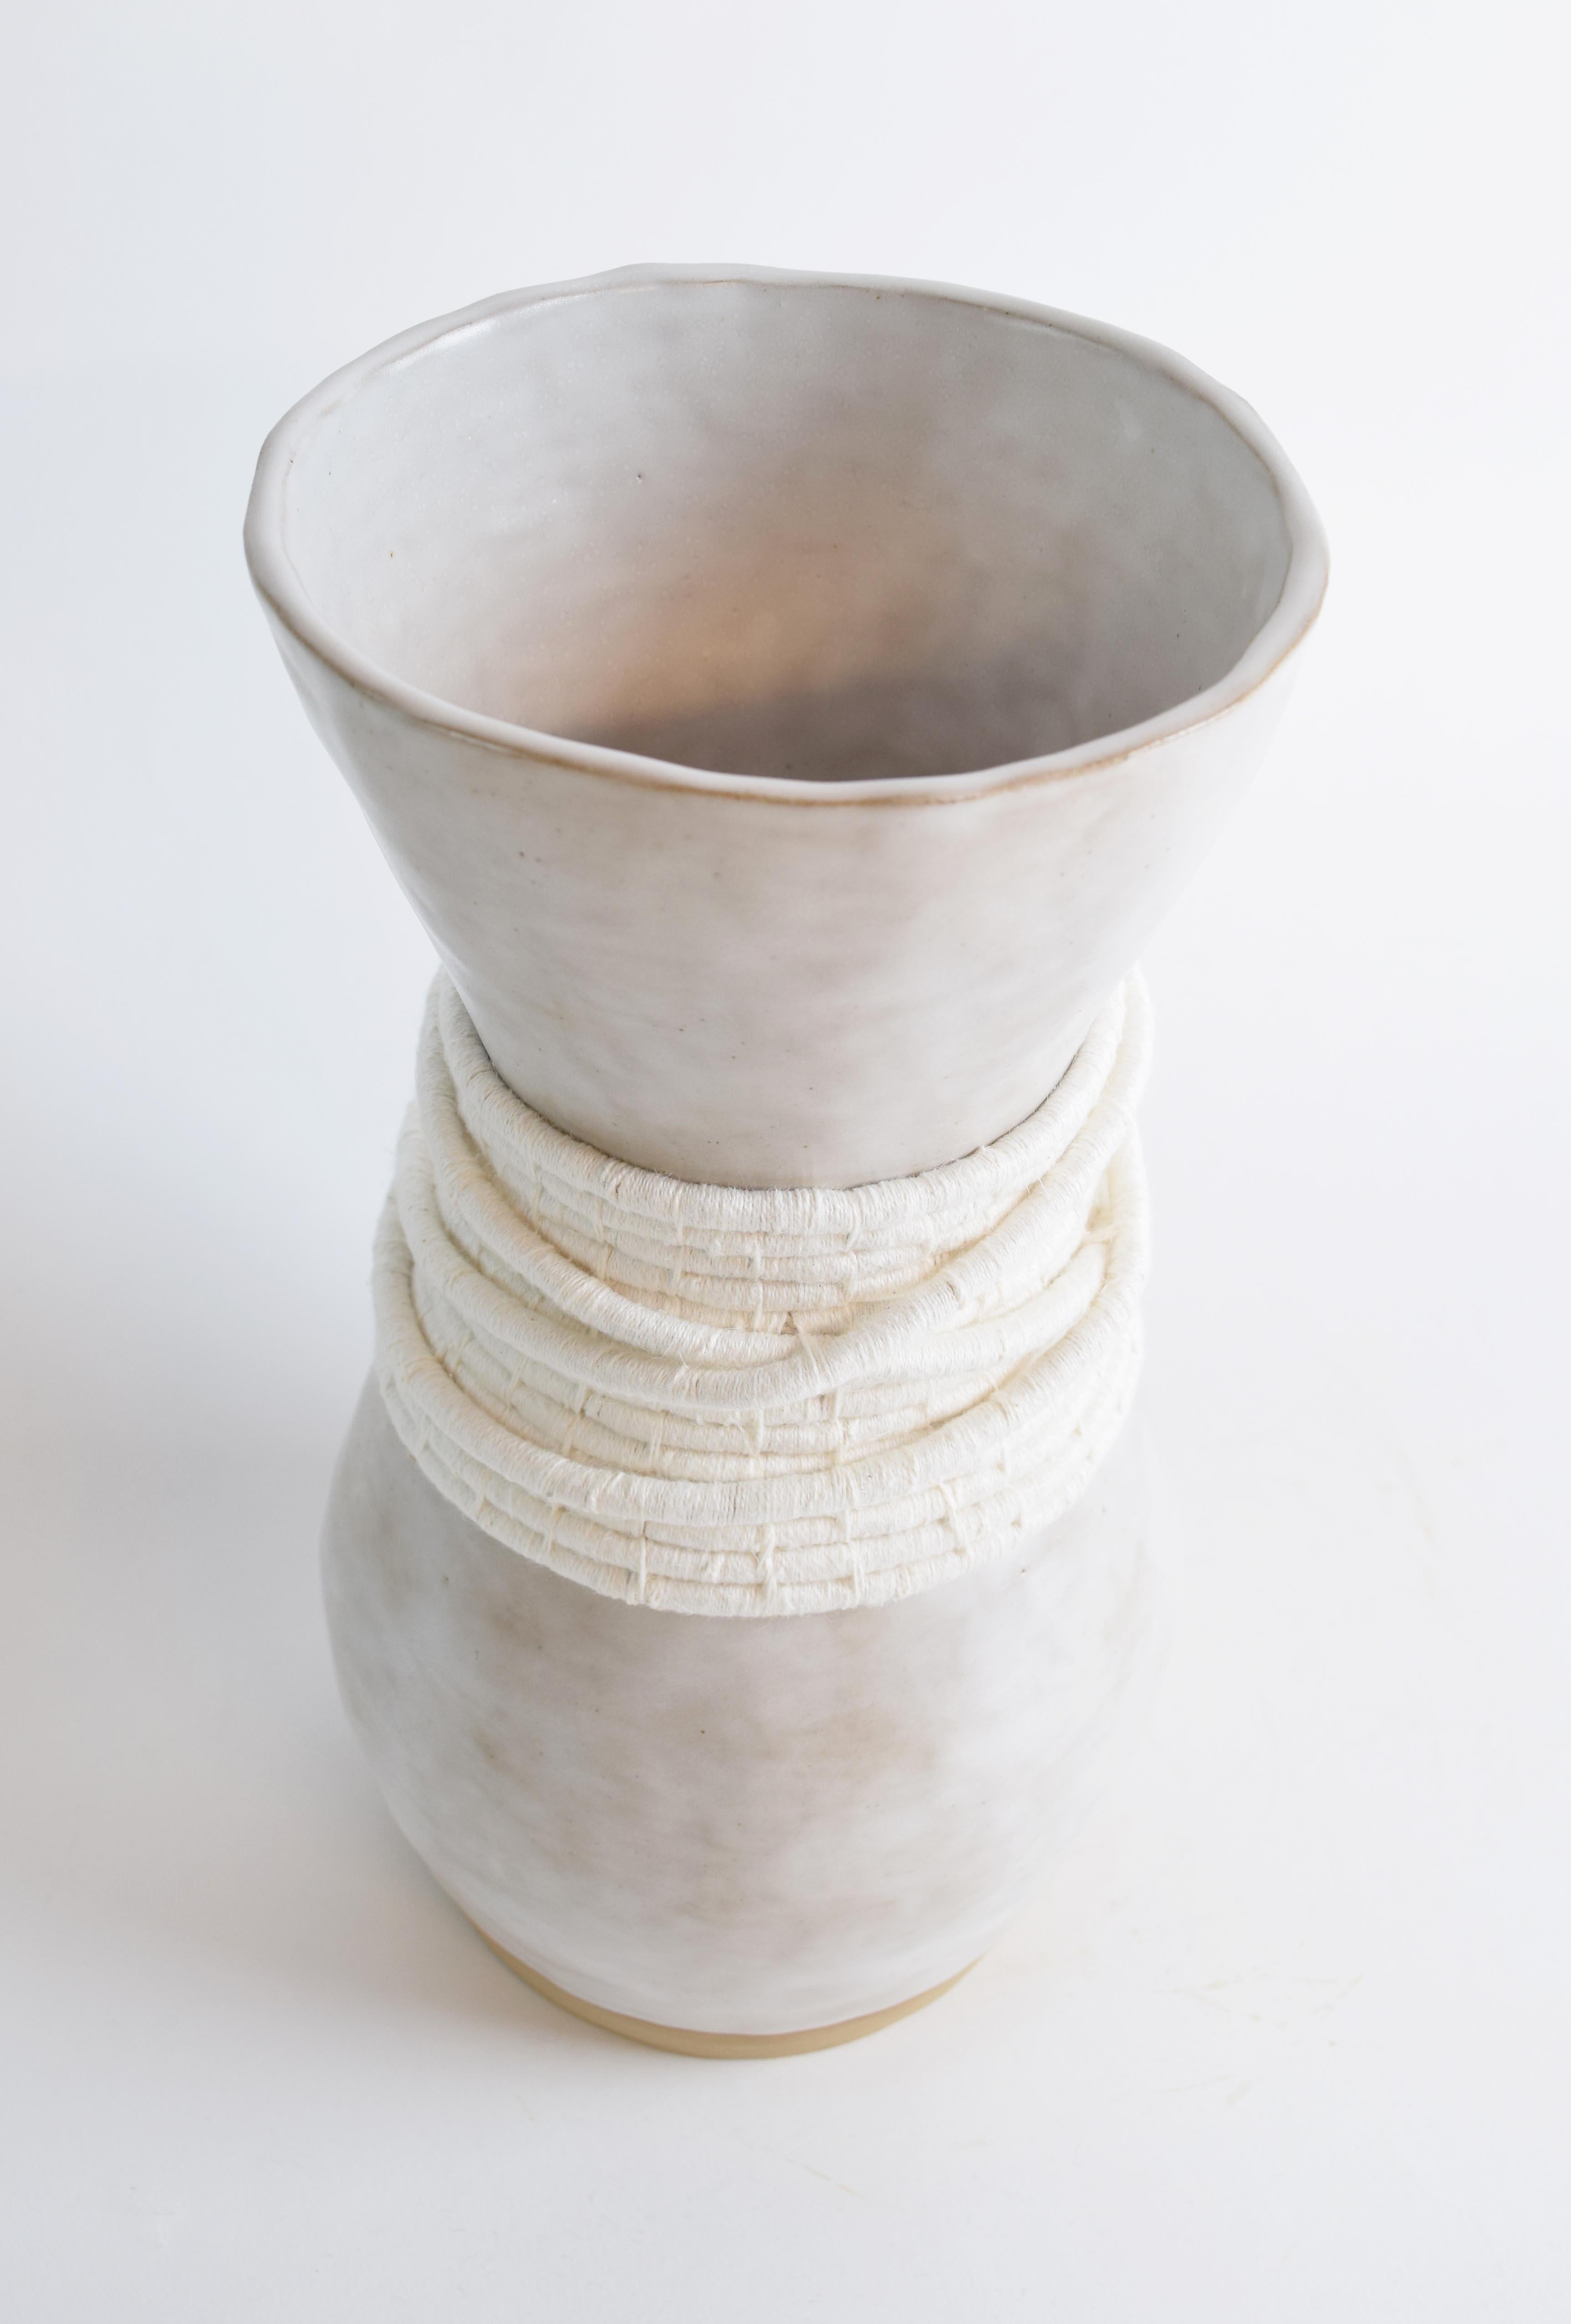 Organique Vase unique en son genre en céramique et fibres n° 809  - glaçure blanche avec coton blanc tissé en vente